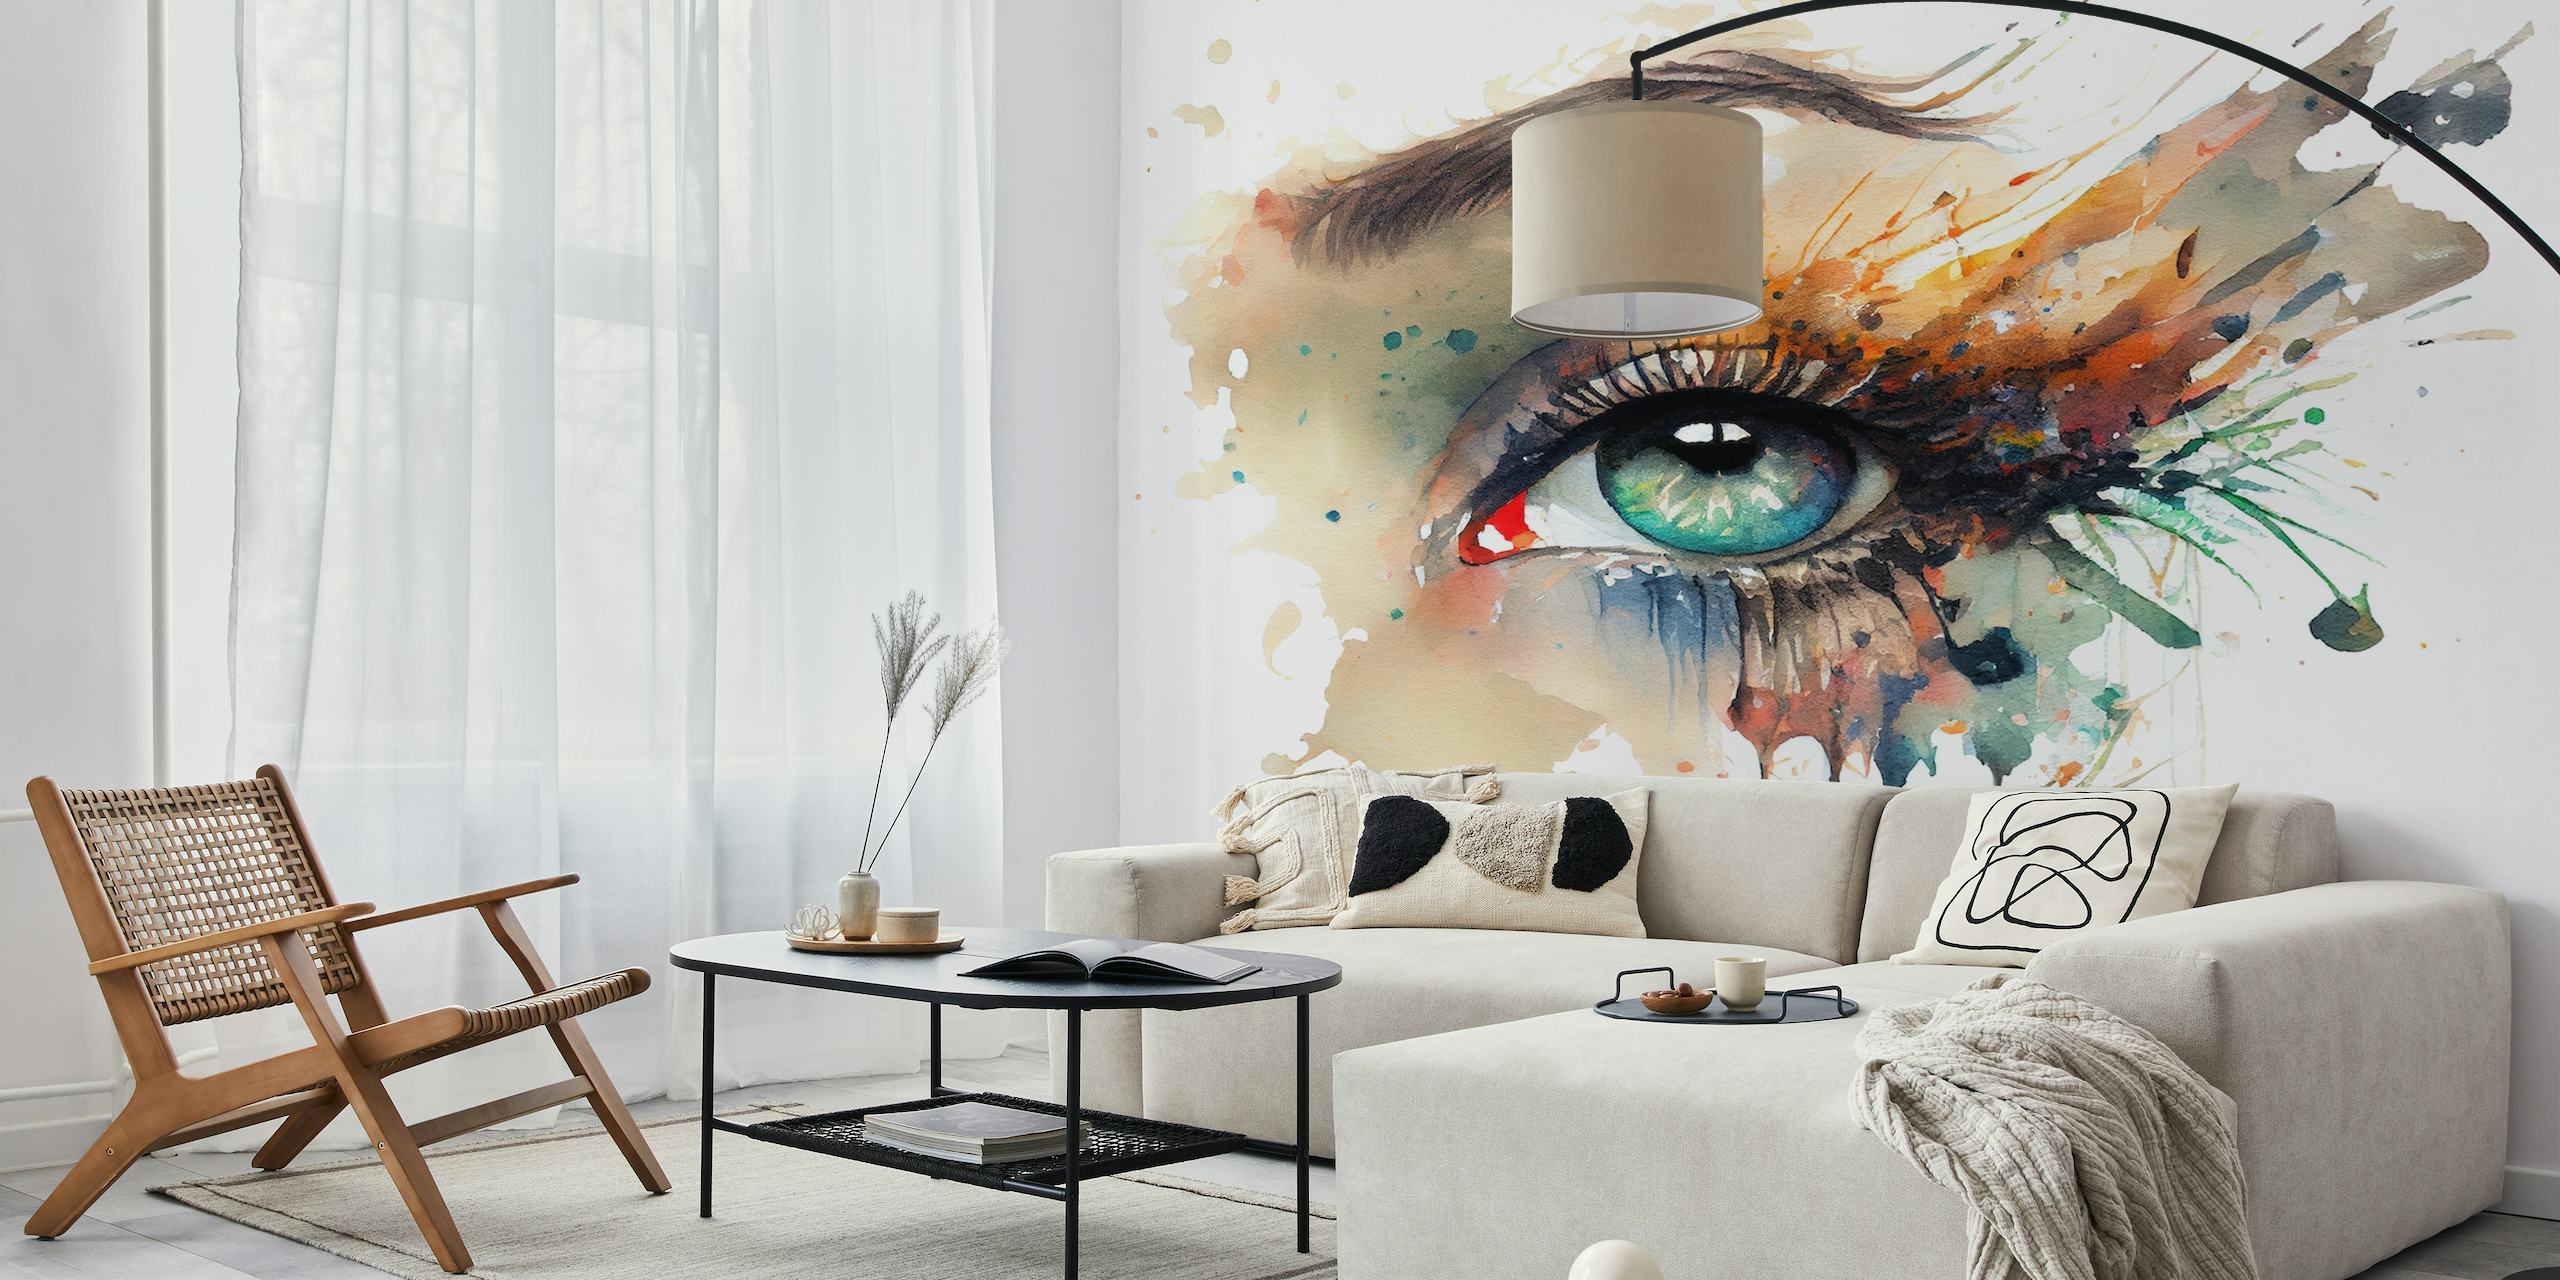 Umjetnički zidni mural ženskog oka naslikanog akvarelom sa živim bojama i efektom kapanja boje